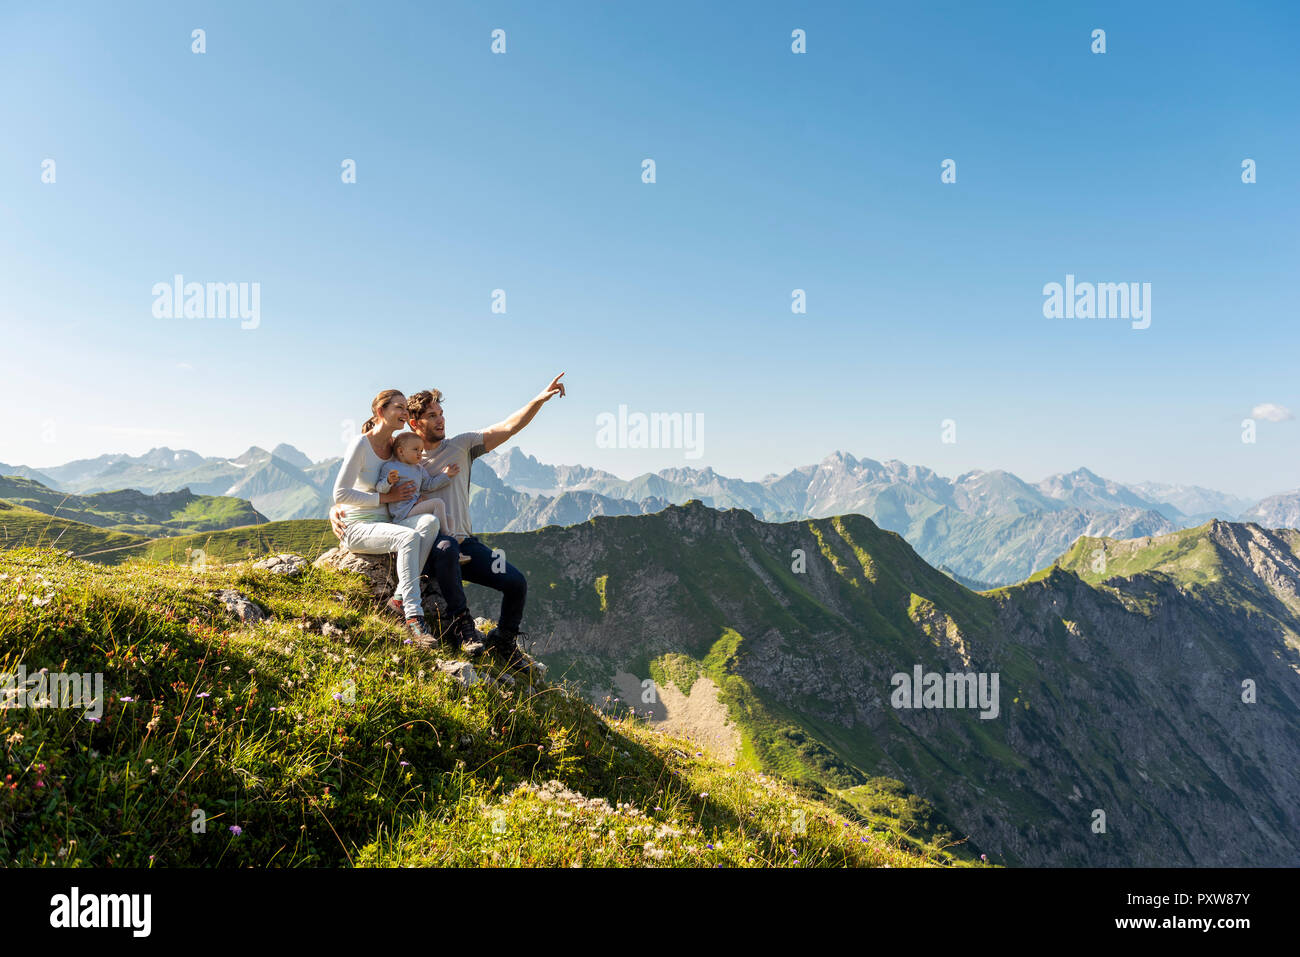 Allemagne, Bavière, Oberstdorf, famille avec ma petite fille sur une randonnée dans les montagnes d'avoir une pause looking at view Banque D'Images